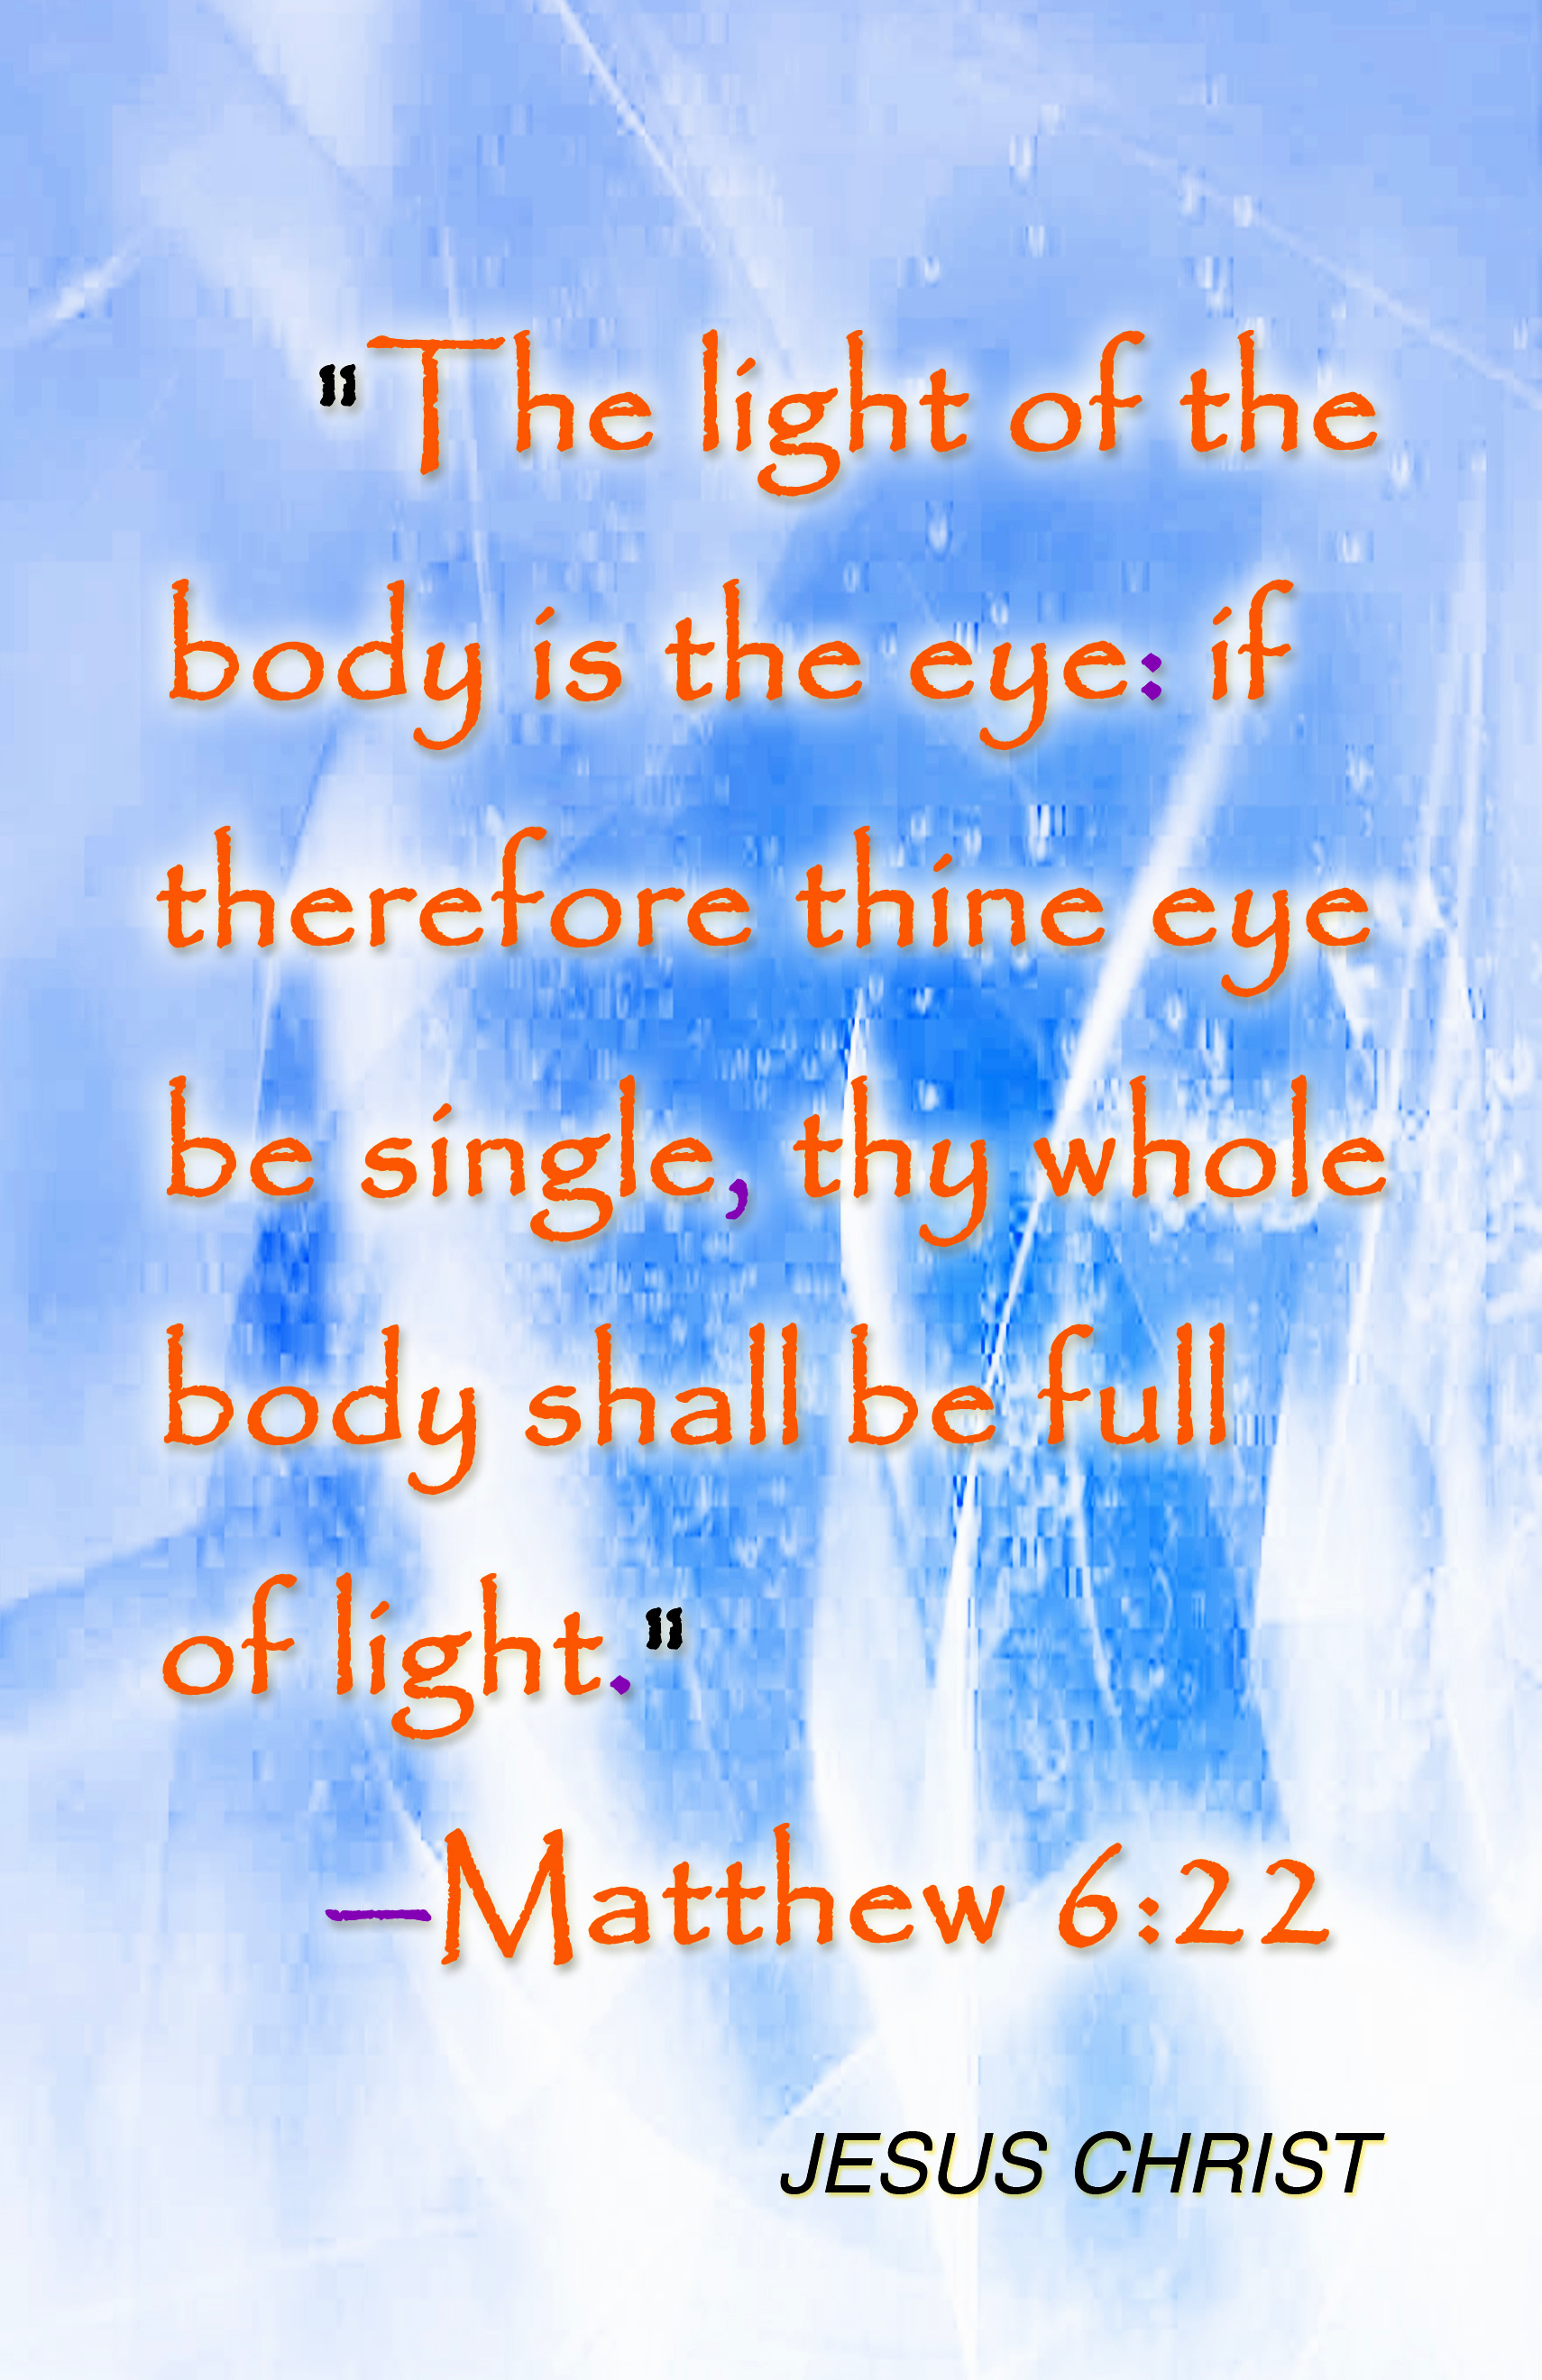 Jesus Christ light of the body wallpaper